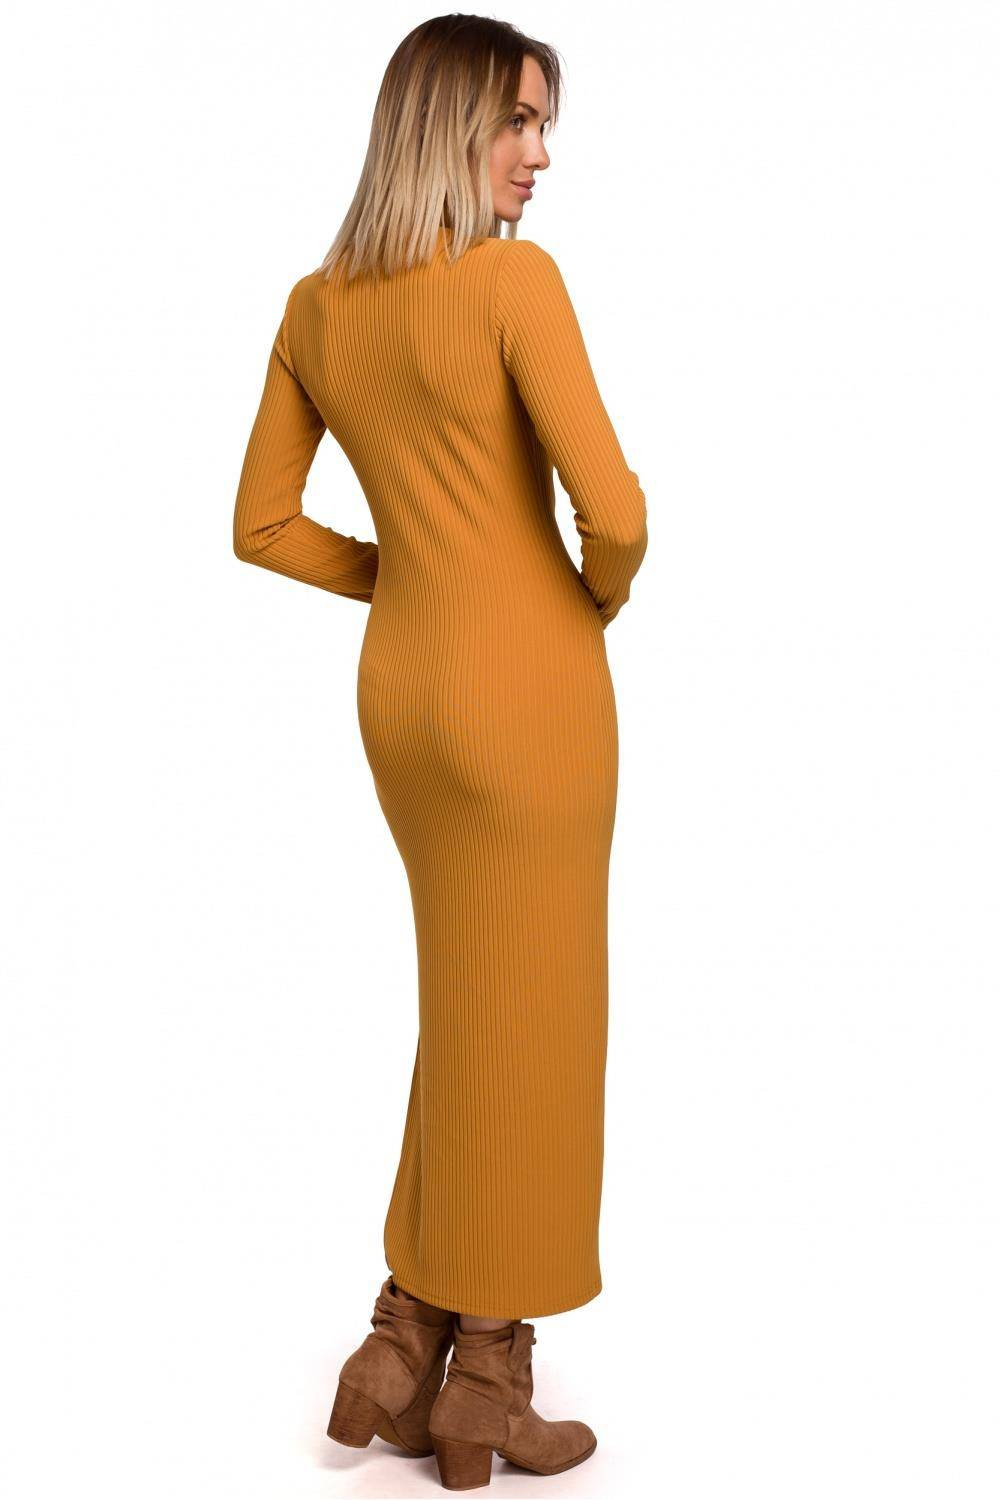 Opis: Sukienka dzianinowa długa dopasowana z rozcięciem żółta.